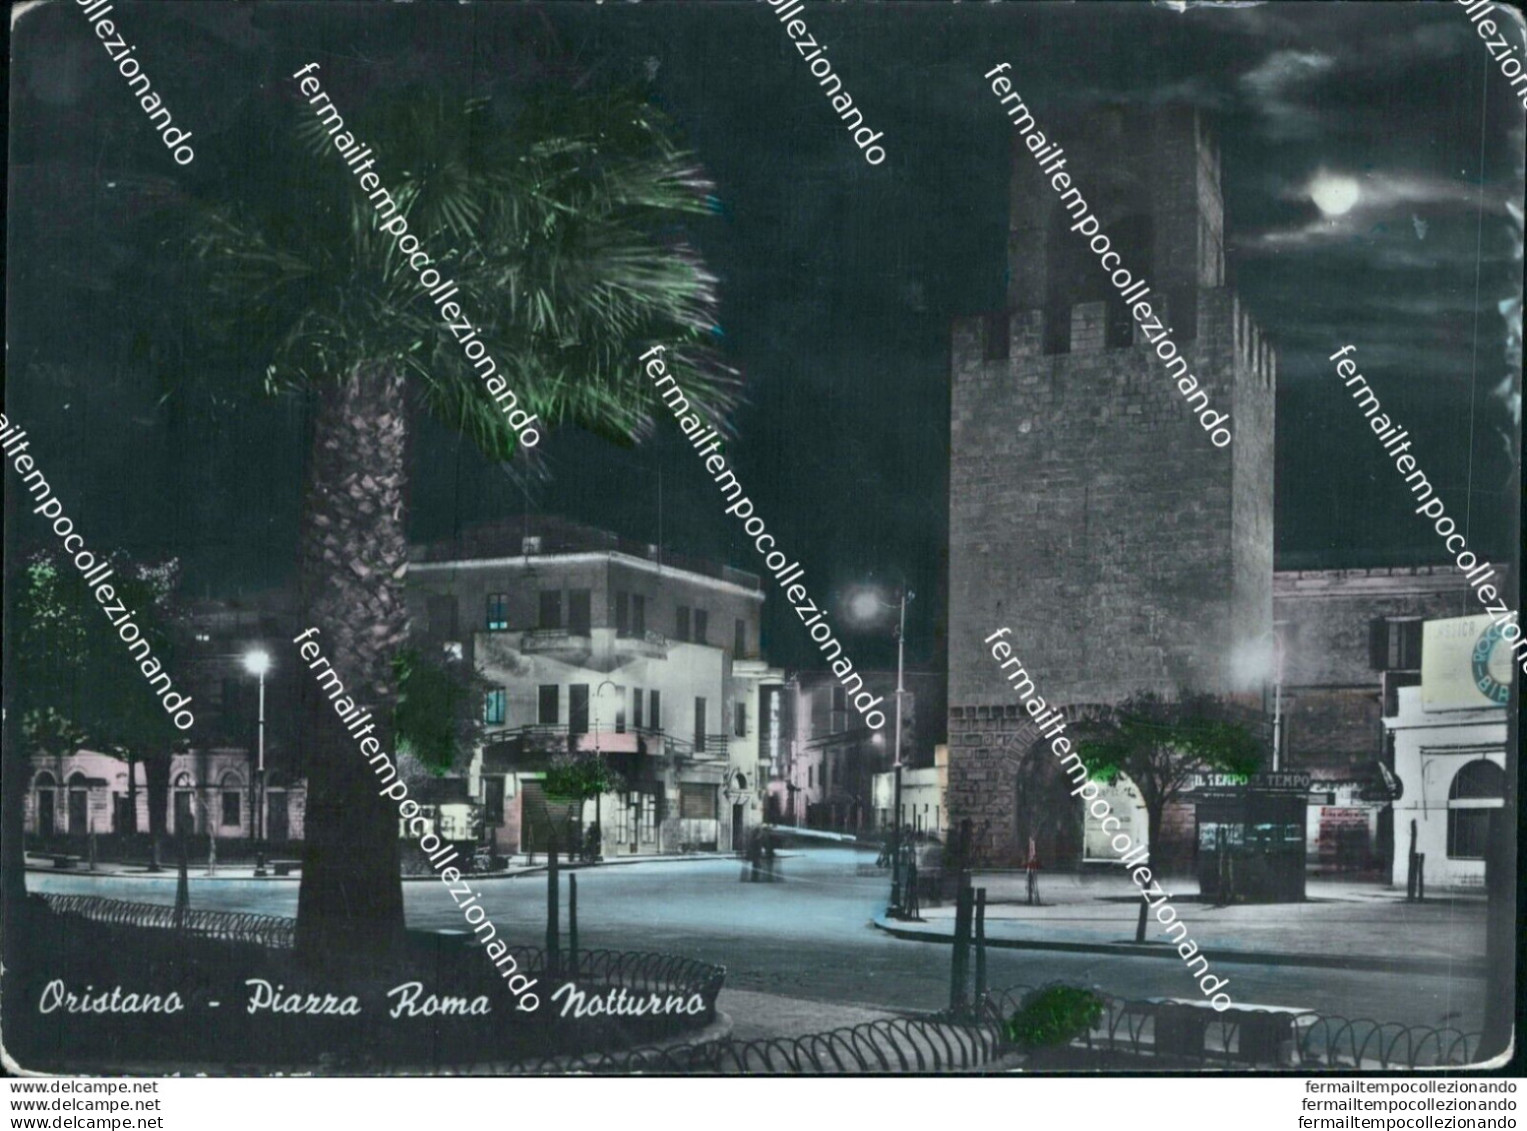 Bb40 Cartolina Oristano Piazza Roma Notturno - Oristano